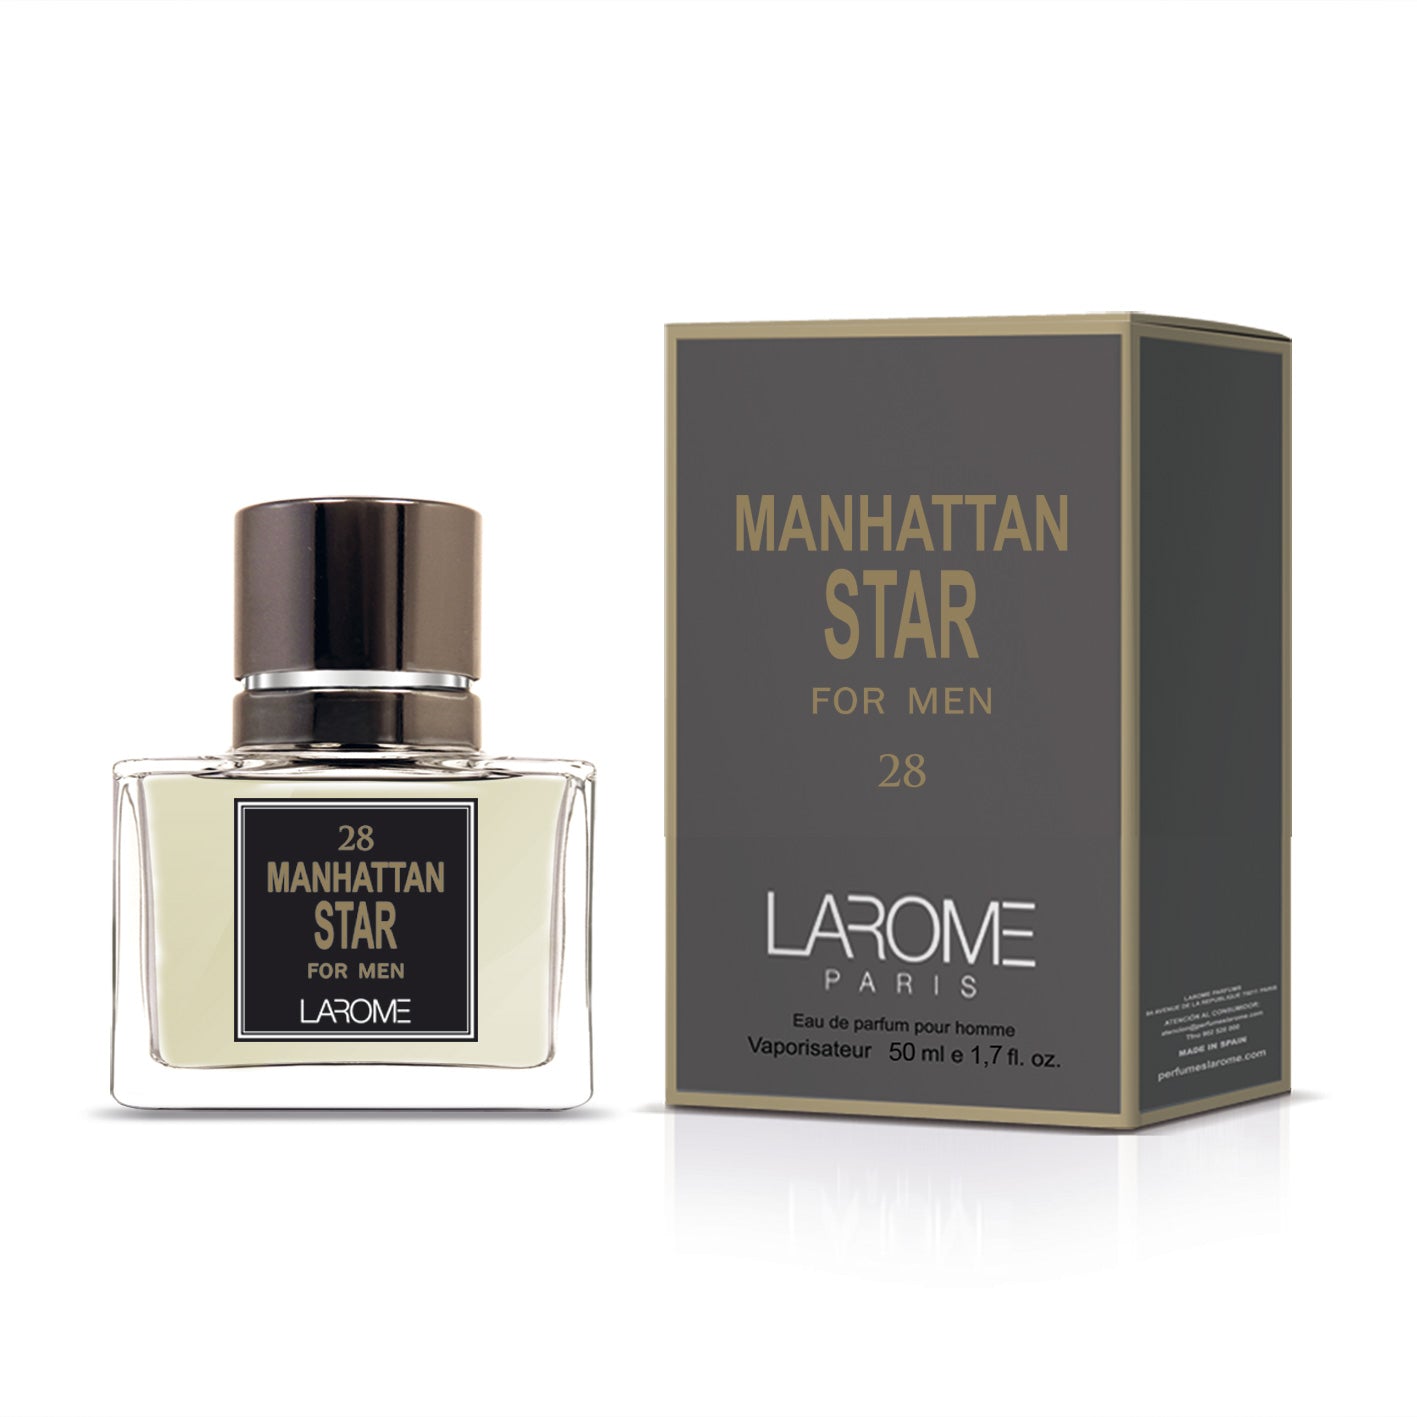 Manhattan 28M Star for Men by Larome geïnspireerd door 212 VIP Men